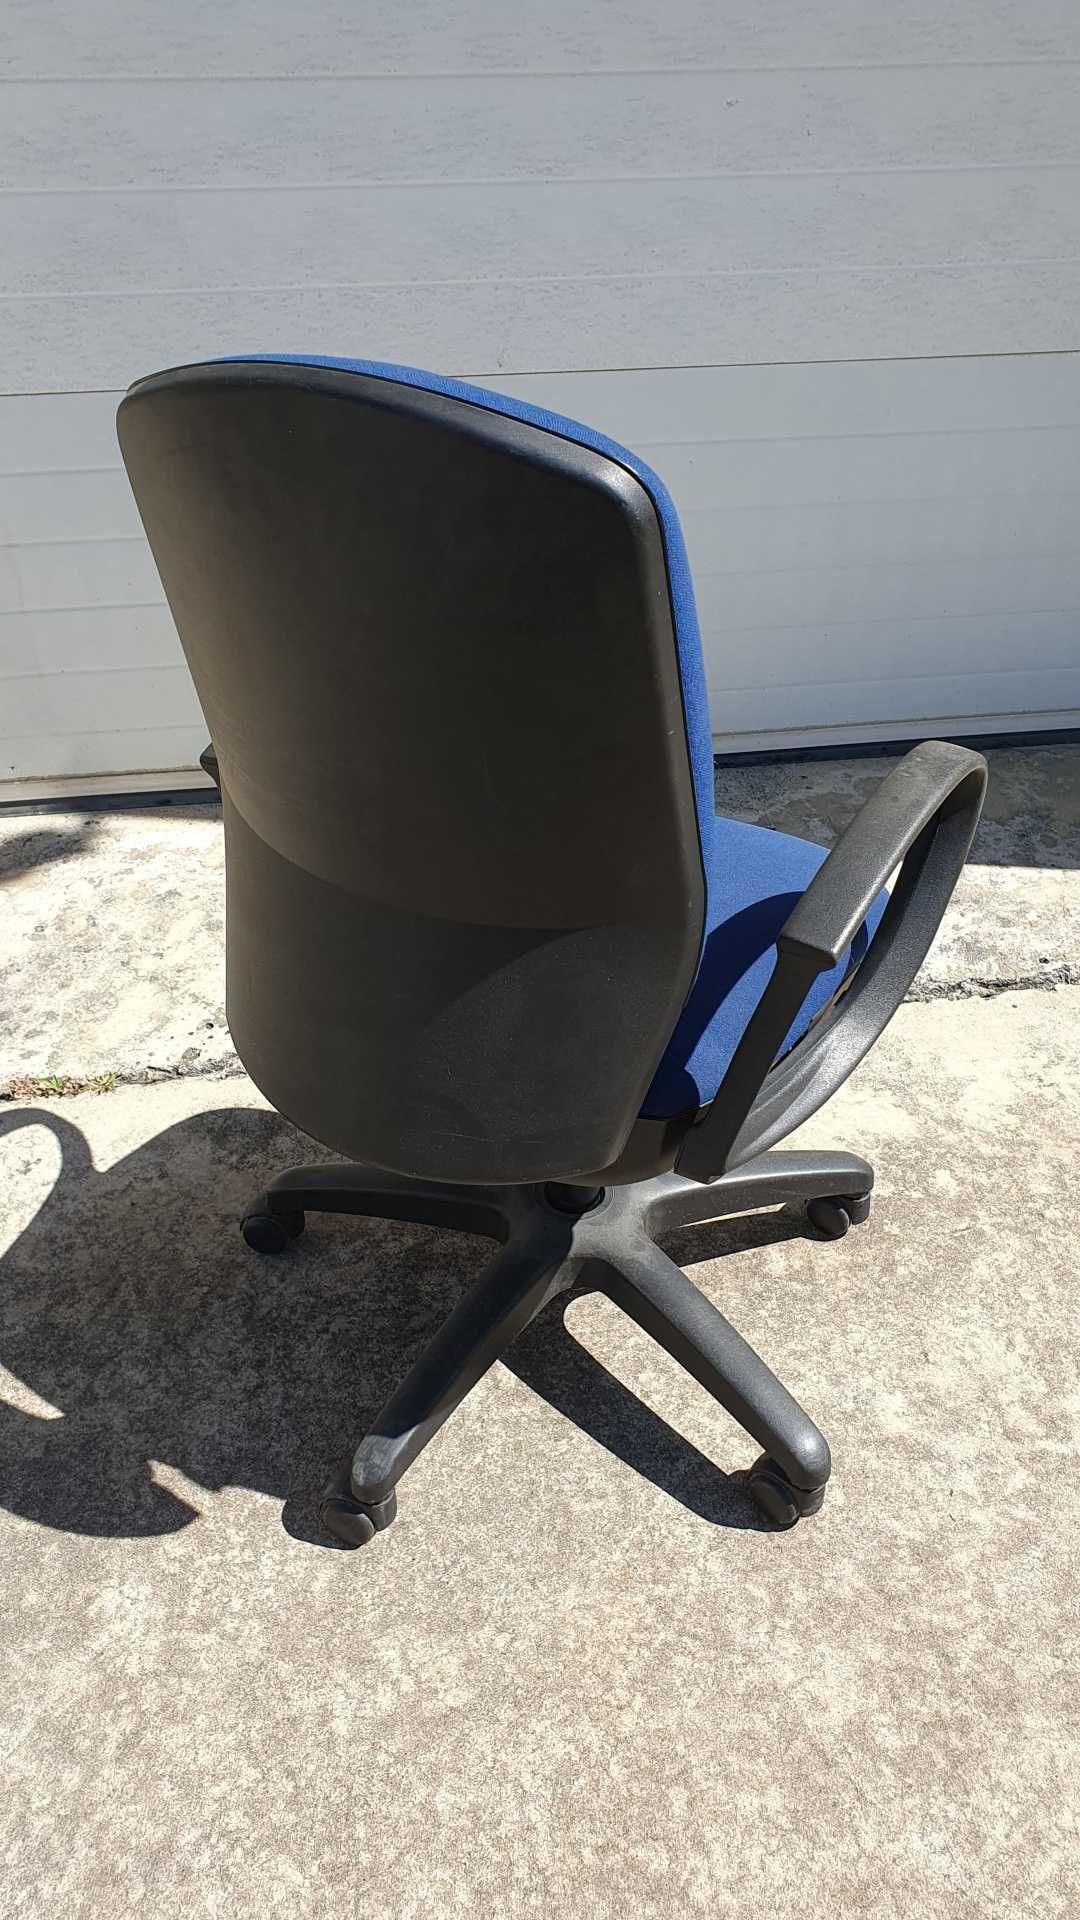 Cadeira de escritório usada